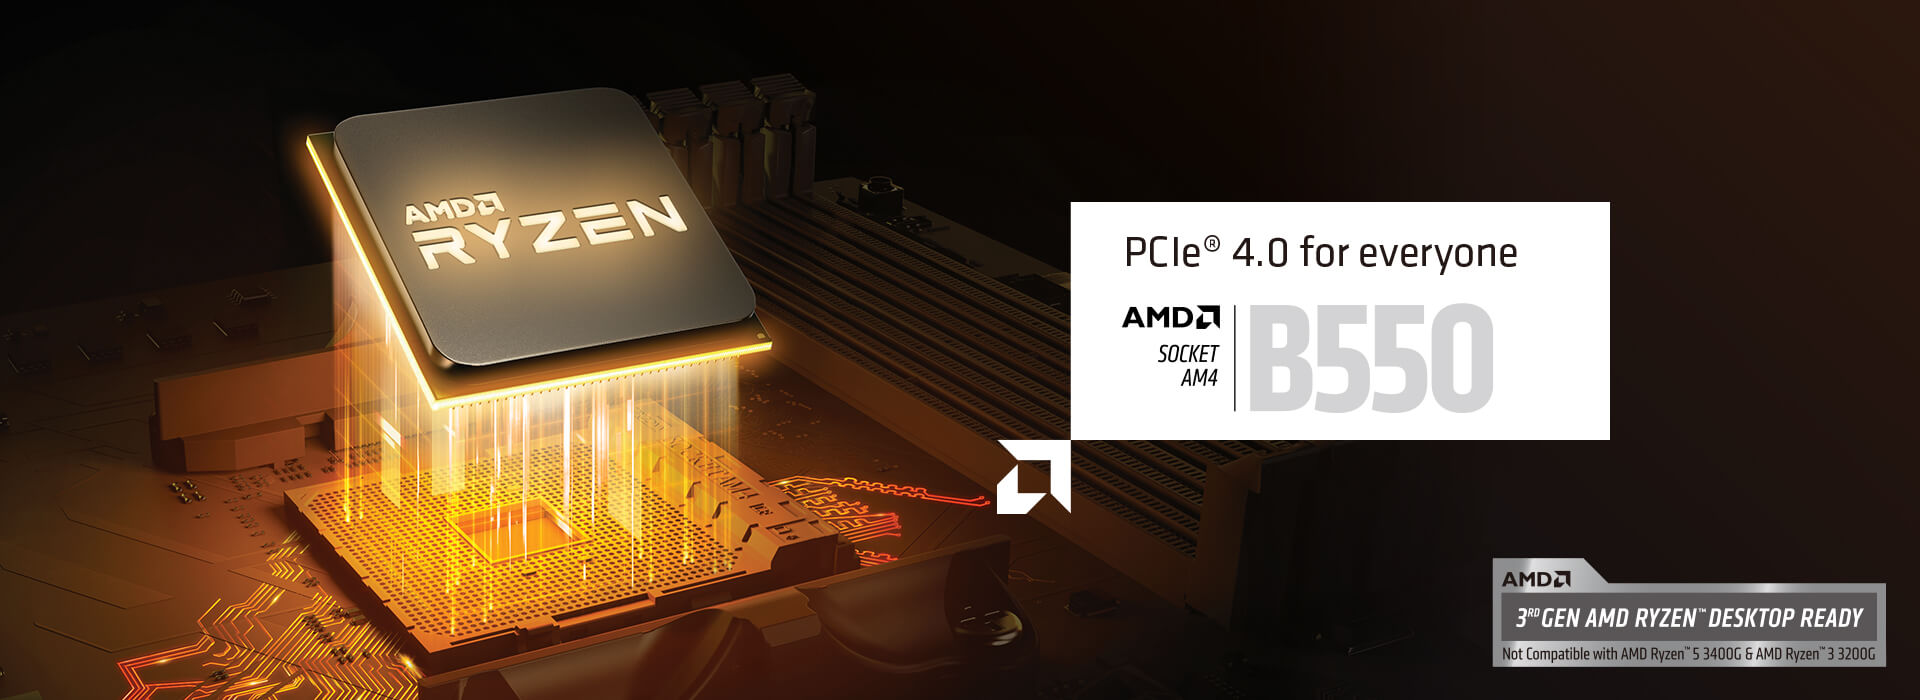 みんなのためのPCIe 4.0。AMDソケットAM $ B550。第3世代AMD RYZENデスクトップ対応。AMD Ryzen 5 3400GおよびAMD Ryzen 3 3200Gとは互換性がありません。